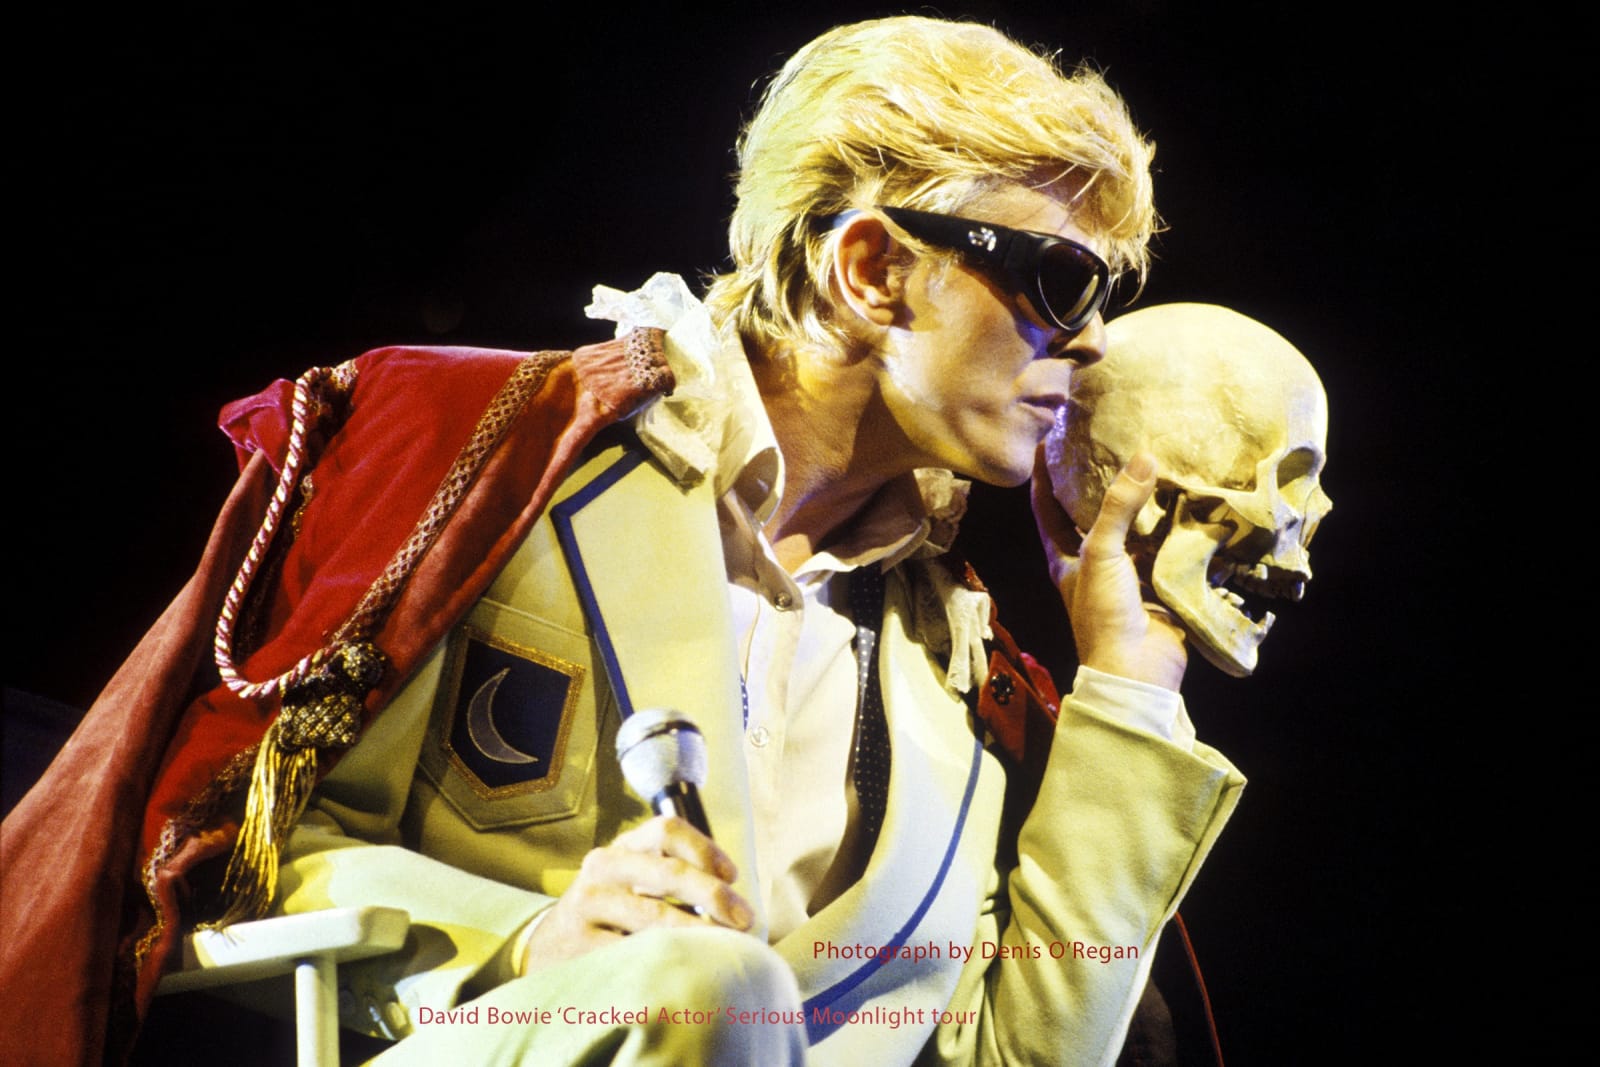 DAVID BOWIE, David Bowie 'Hamlet', 1983